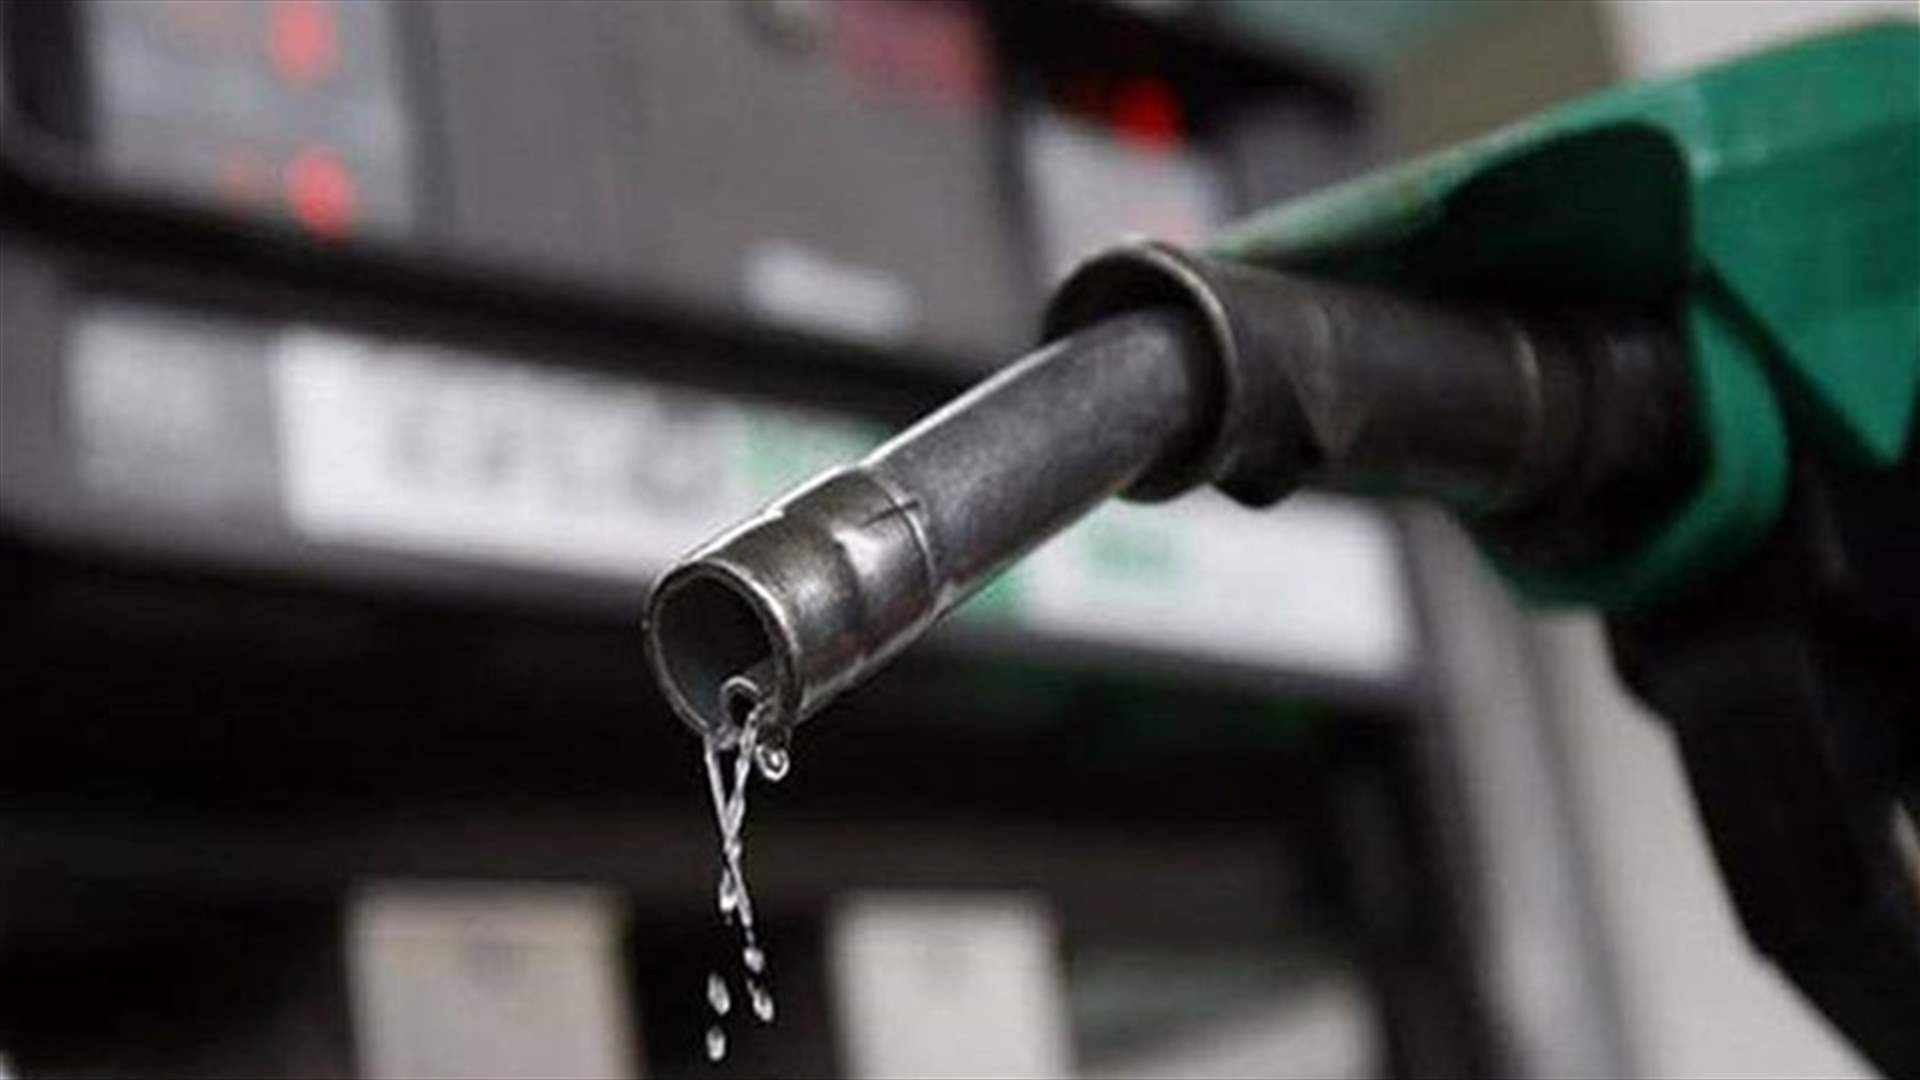 ارتفاع سعر البنزين واستقرار سعري المازوت والغاز